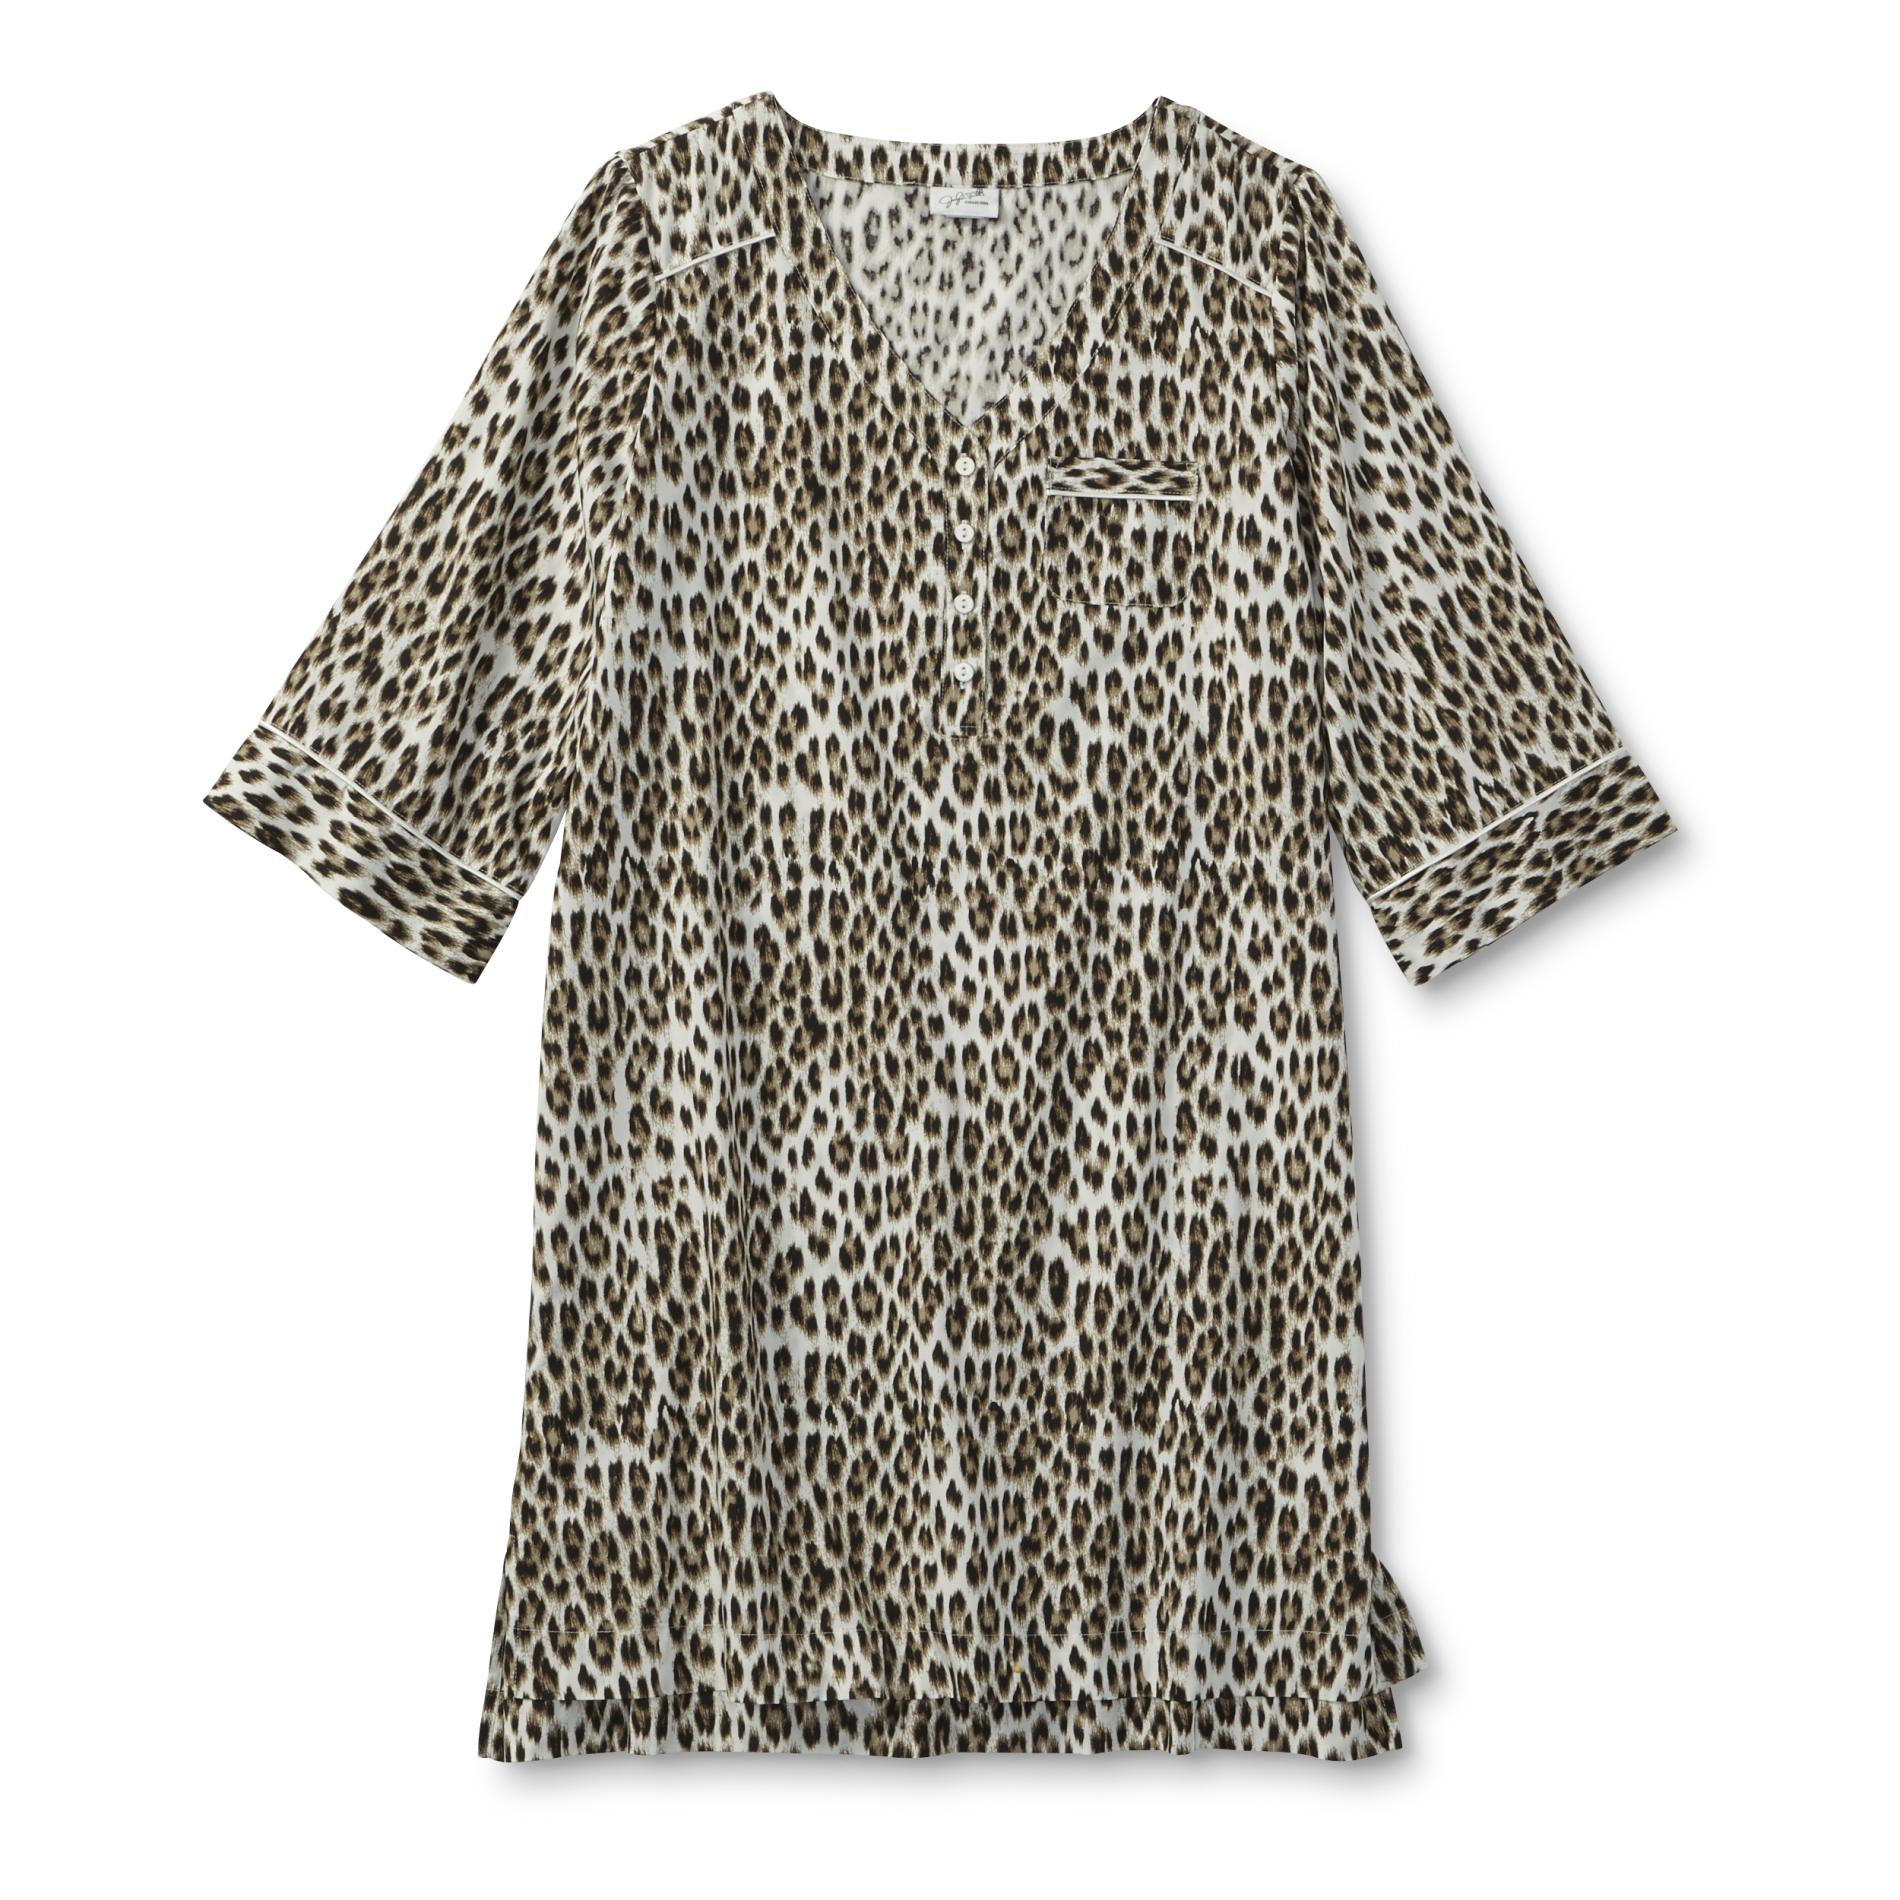 Jaclyn Smith Women's Pocket Nightgown - Leopard